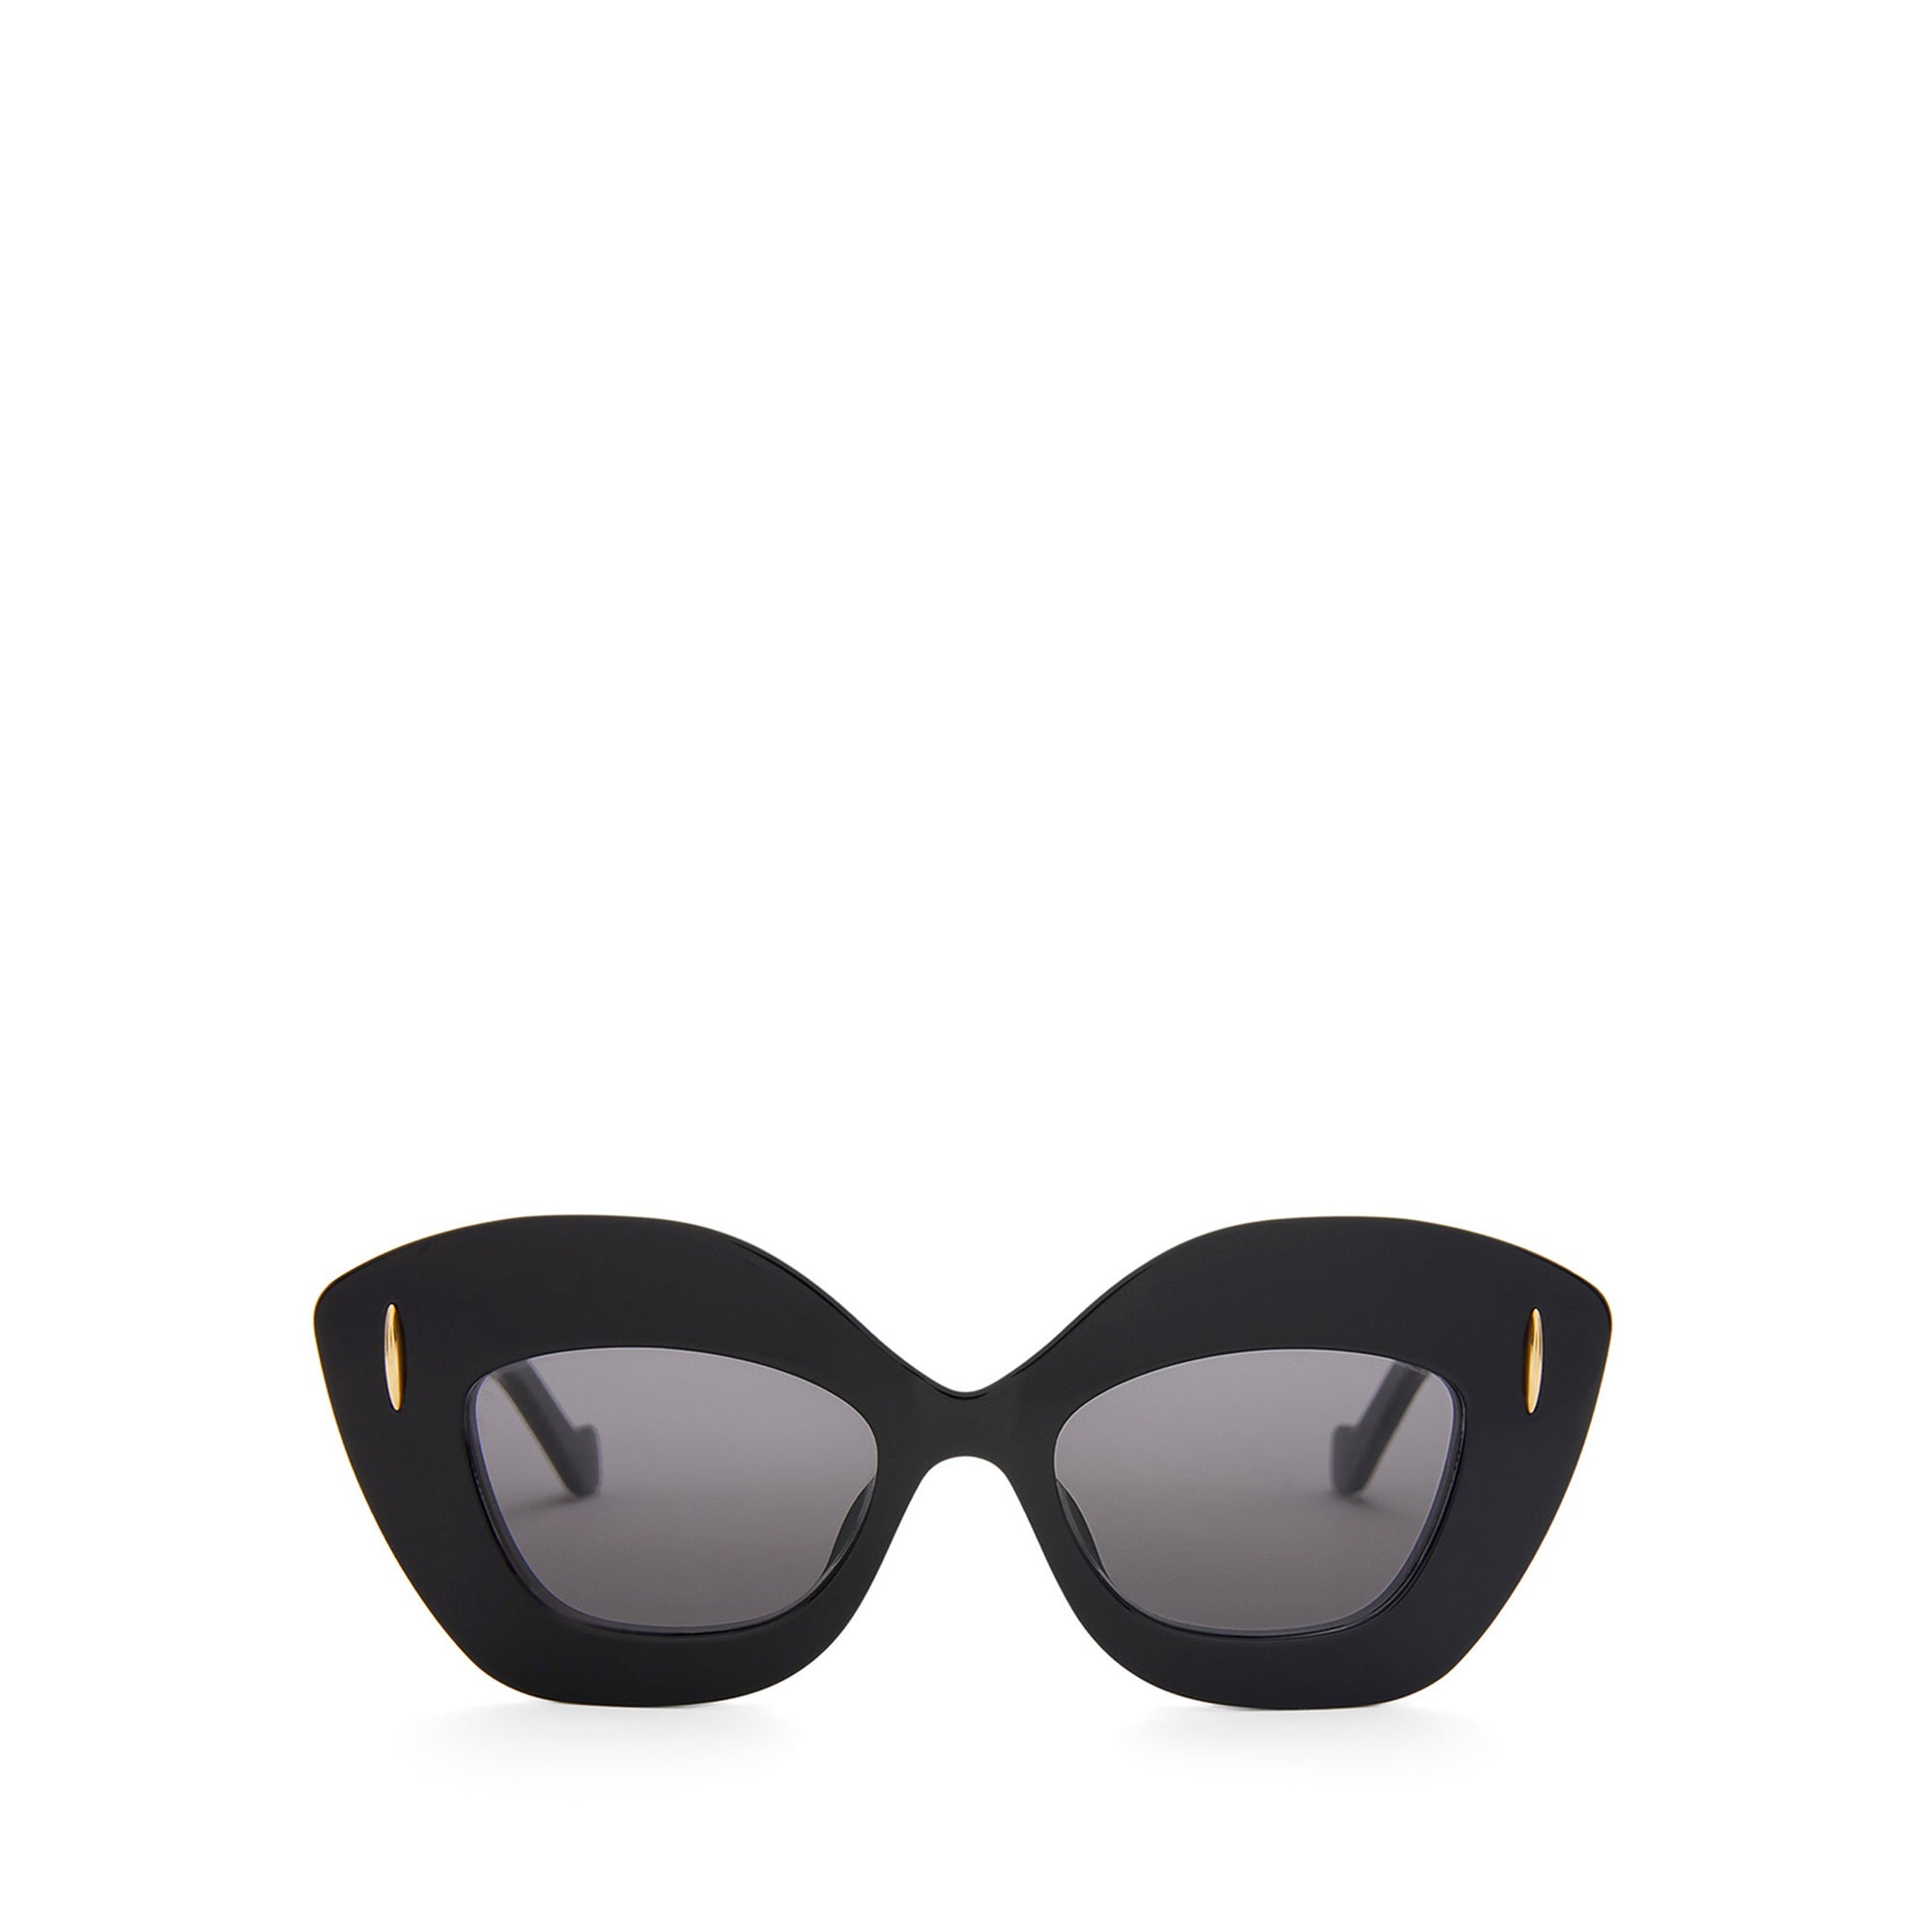 Loewe - Women's Retro Screen Sunglasses - (Black) view 1